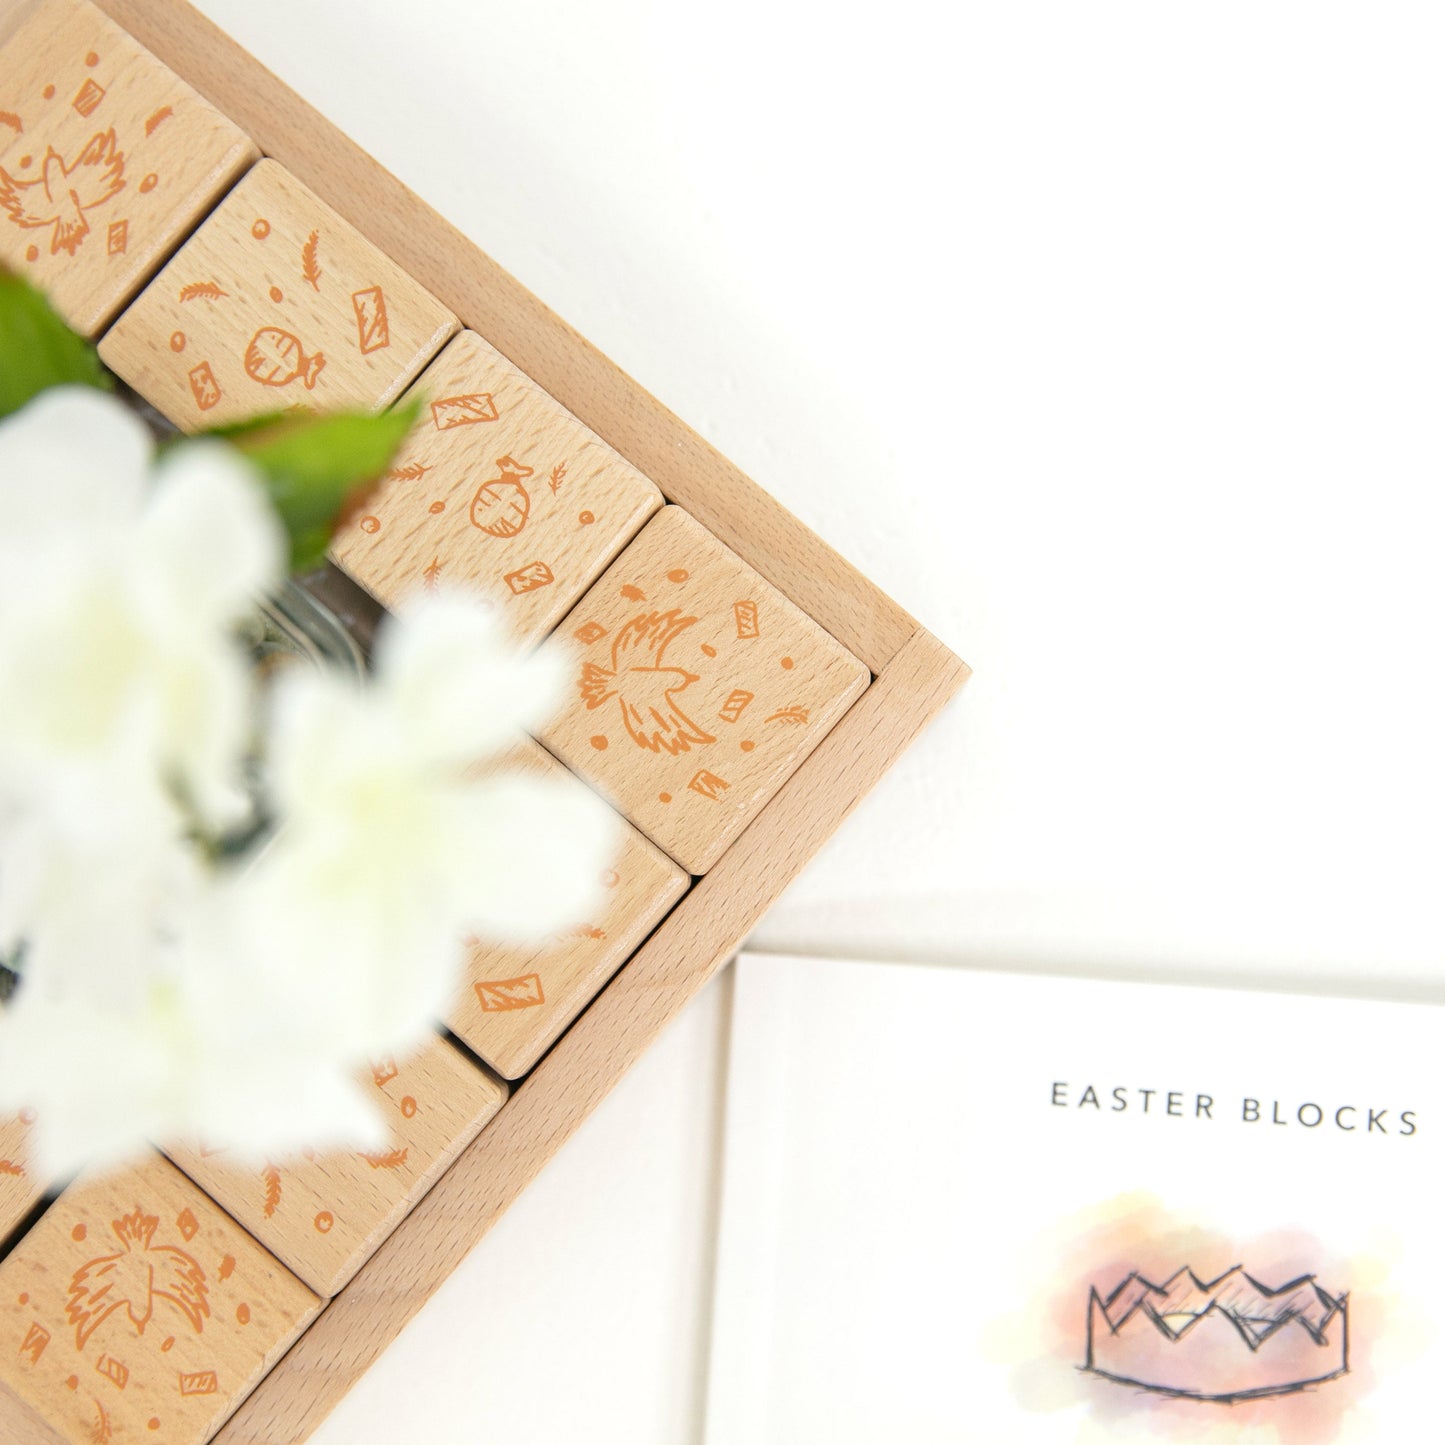 Easter Blocks